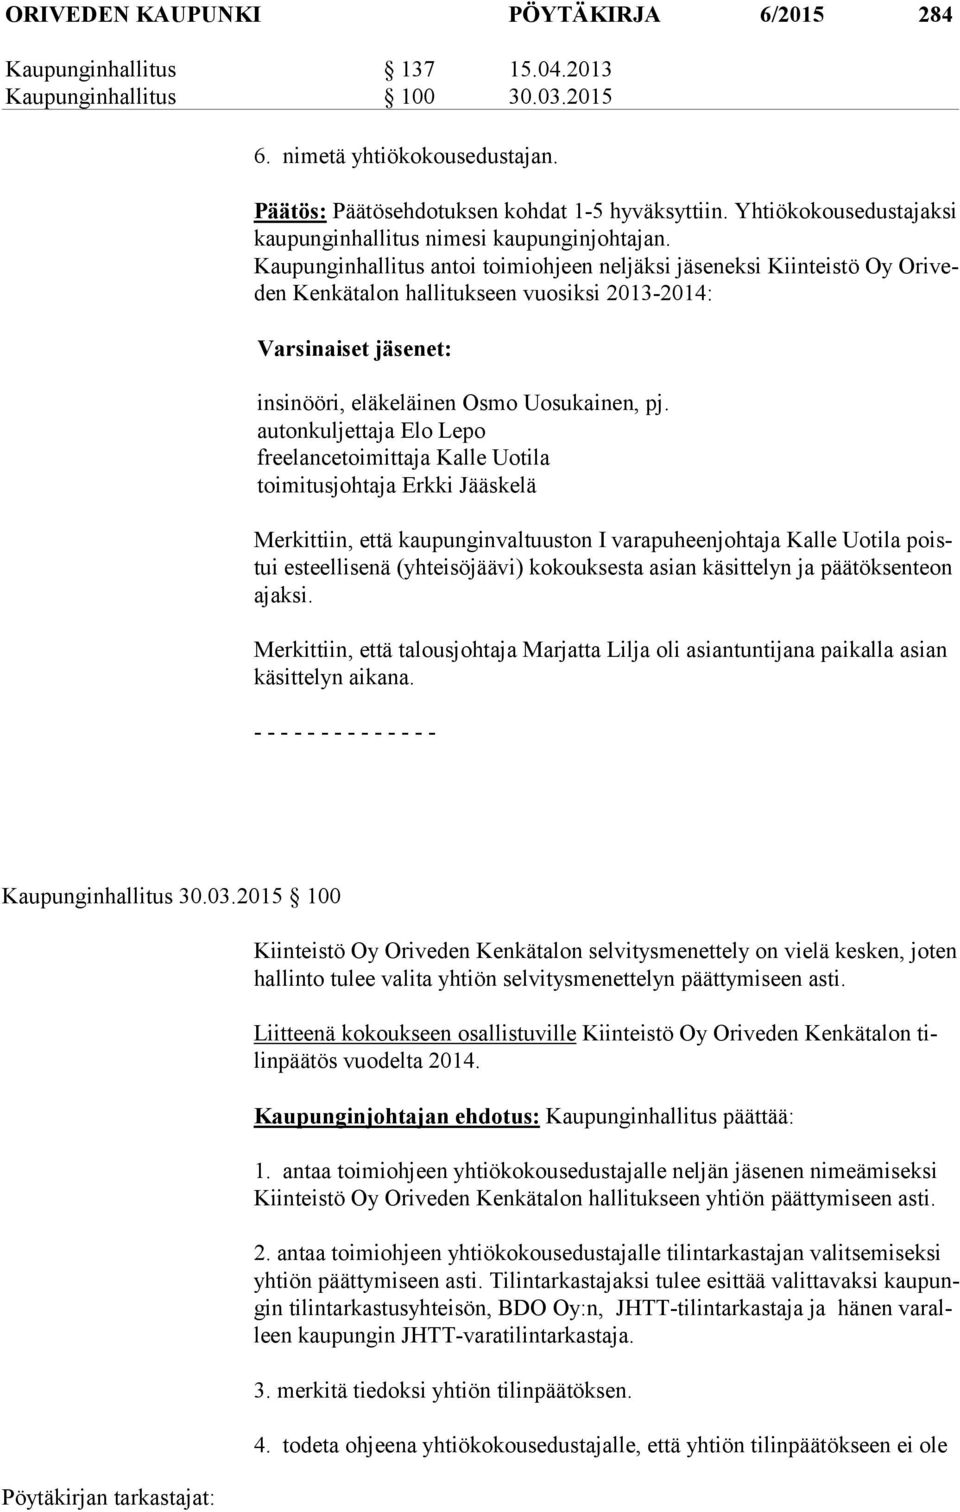 Kaupunginhallitus antoi toimiohjeen neljäksi jäseneksi Kiinteistö Oy Ori veden Kenkätalon hallitukseen vuosiksi 2013-2014: Varsinaiset jäsenet: insinööri, eläkeläinen Osmo Uosukainen, pj.